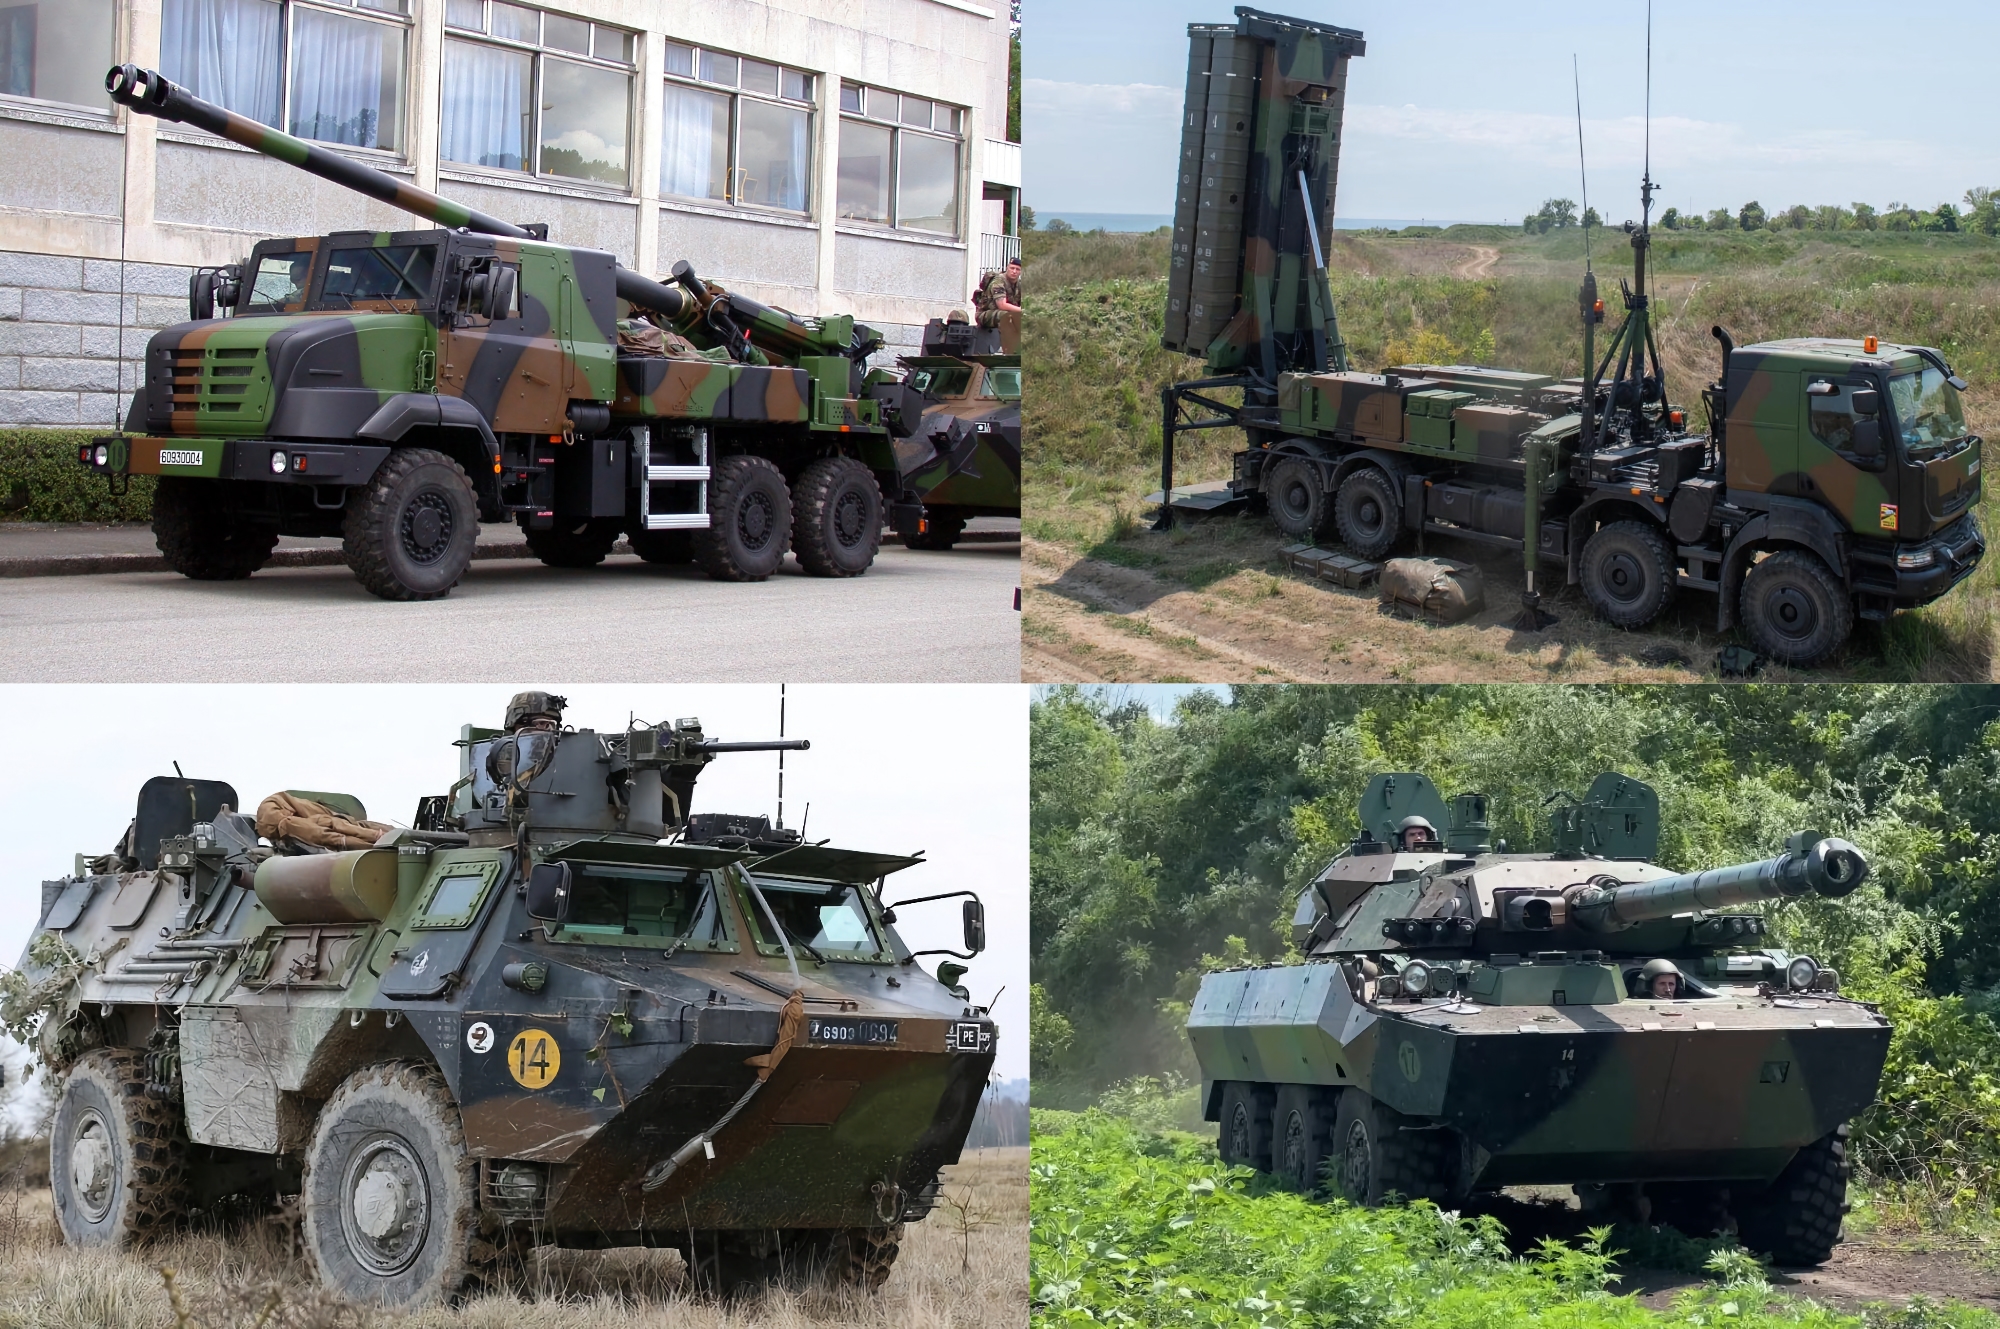 Sistemi di artiglieria Caesar, SAM SAMP/T, carri armati gommati AMX10 RC e veicoli blindati per il personale VAB: La Francia rivela l'elenco dettagliato degli aiuti militari all'Ucraina